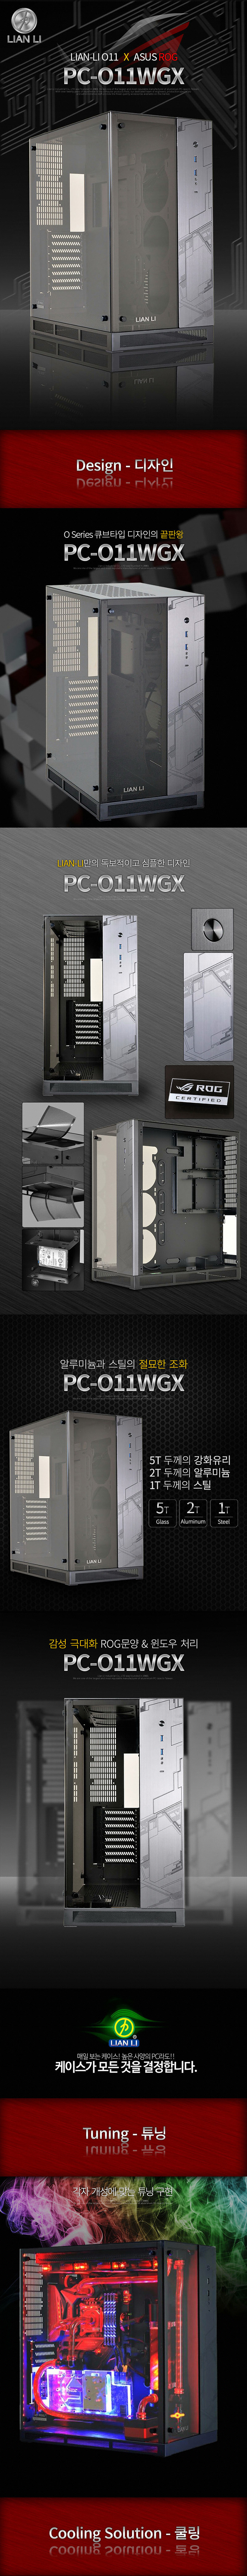 PC-O11WGX_DB_1.jpg